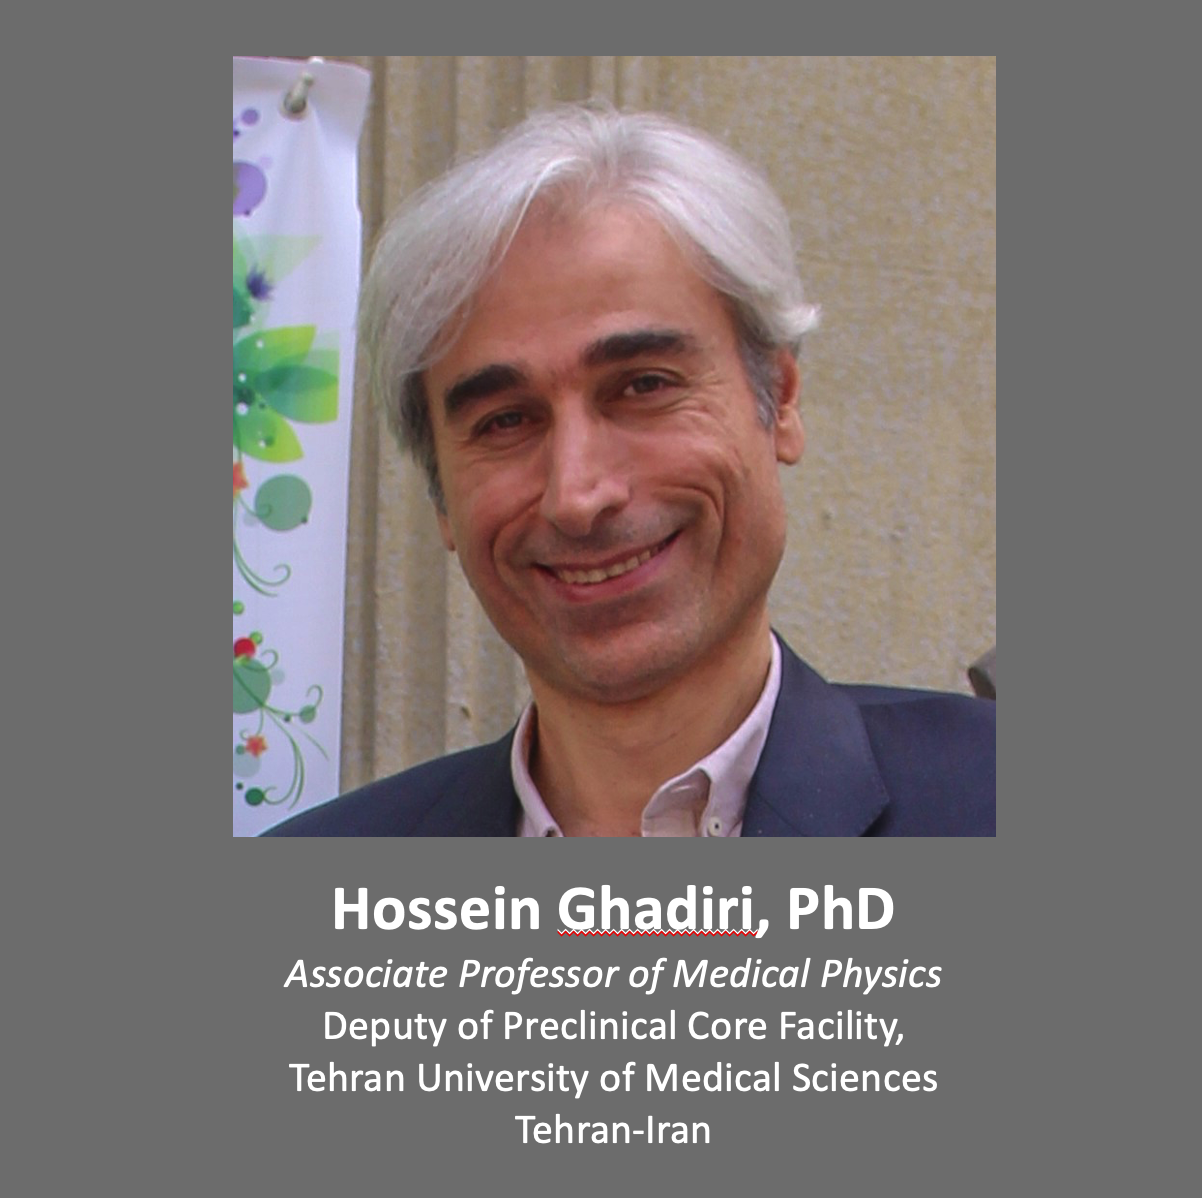 Hossein Ghadiri